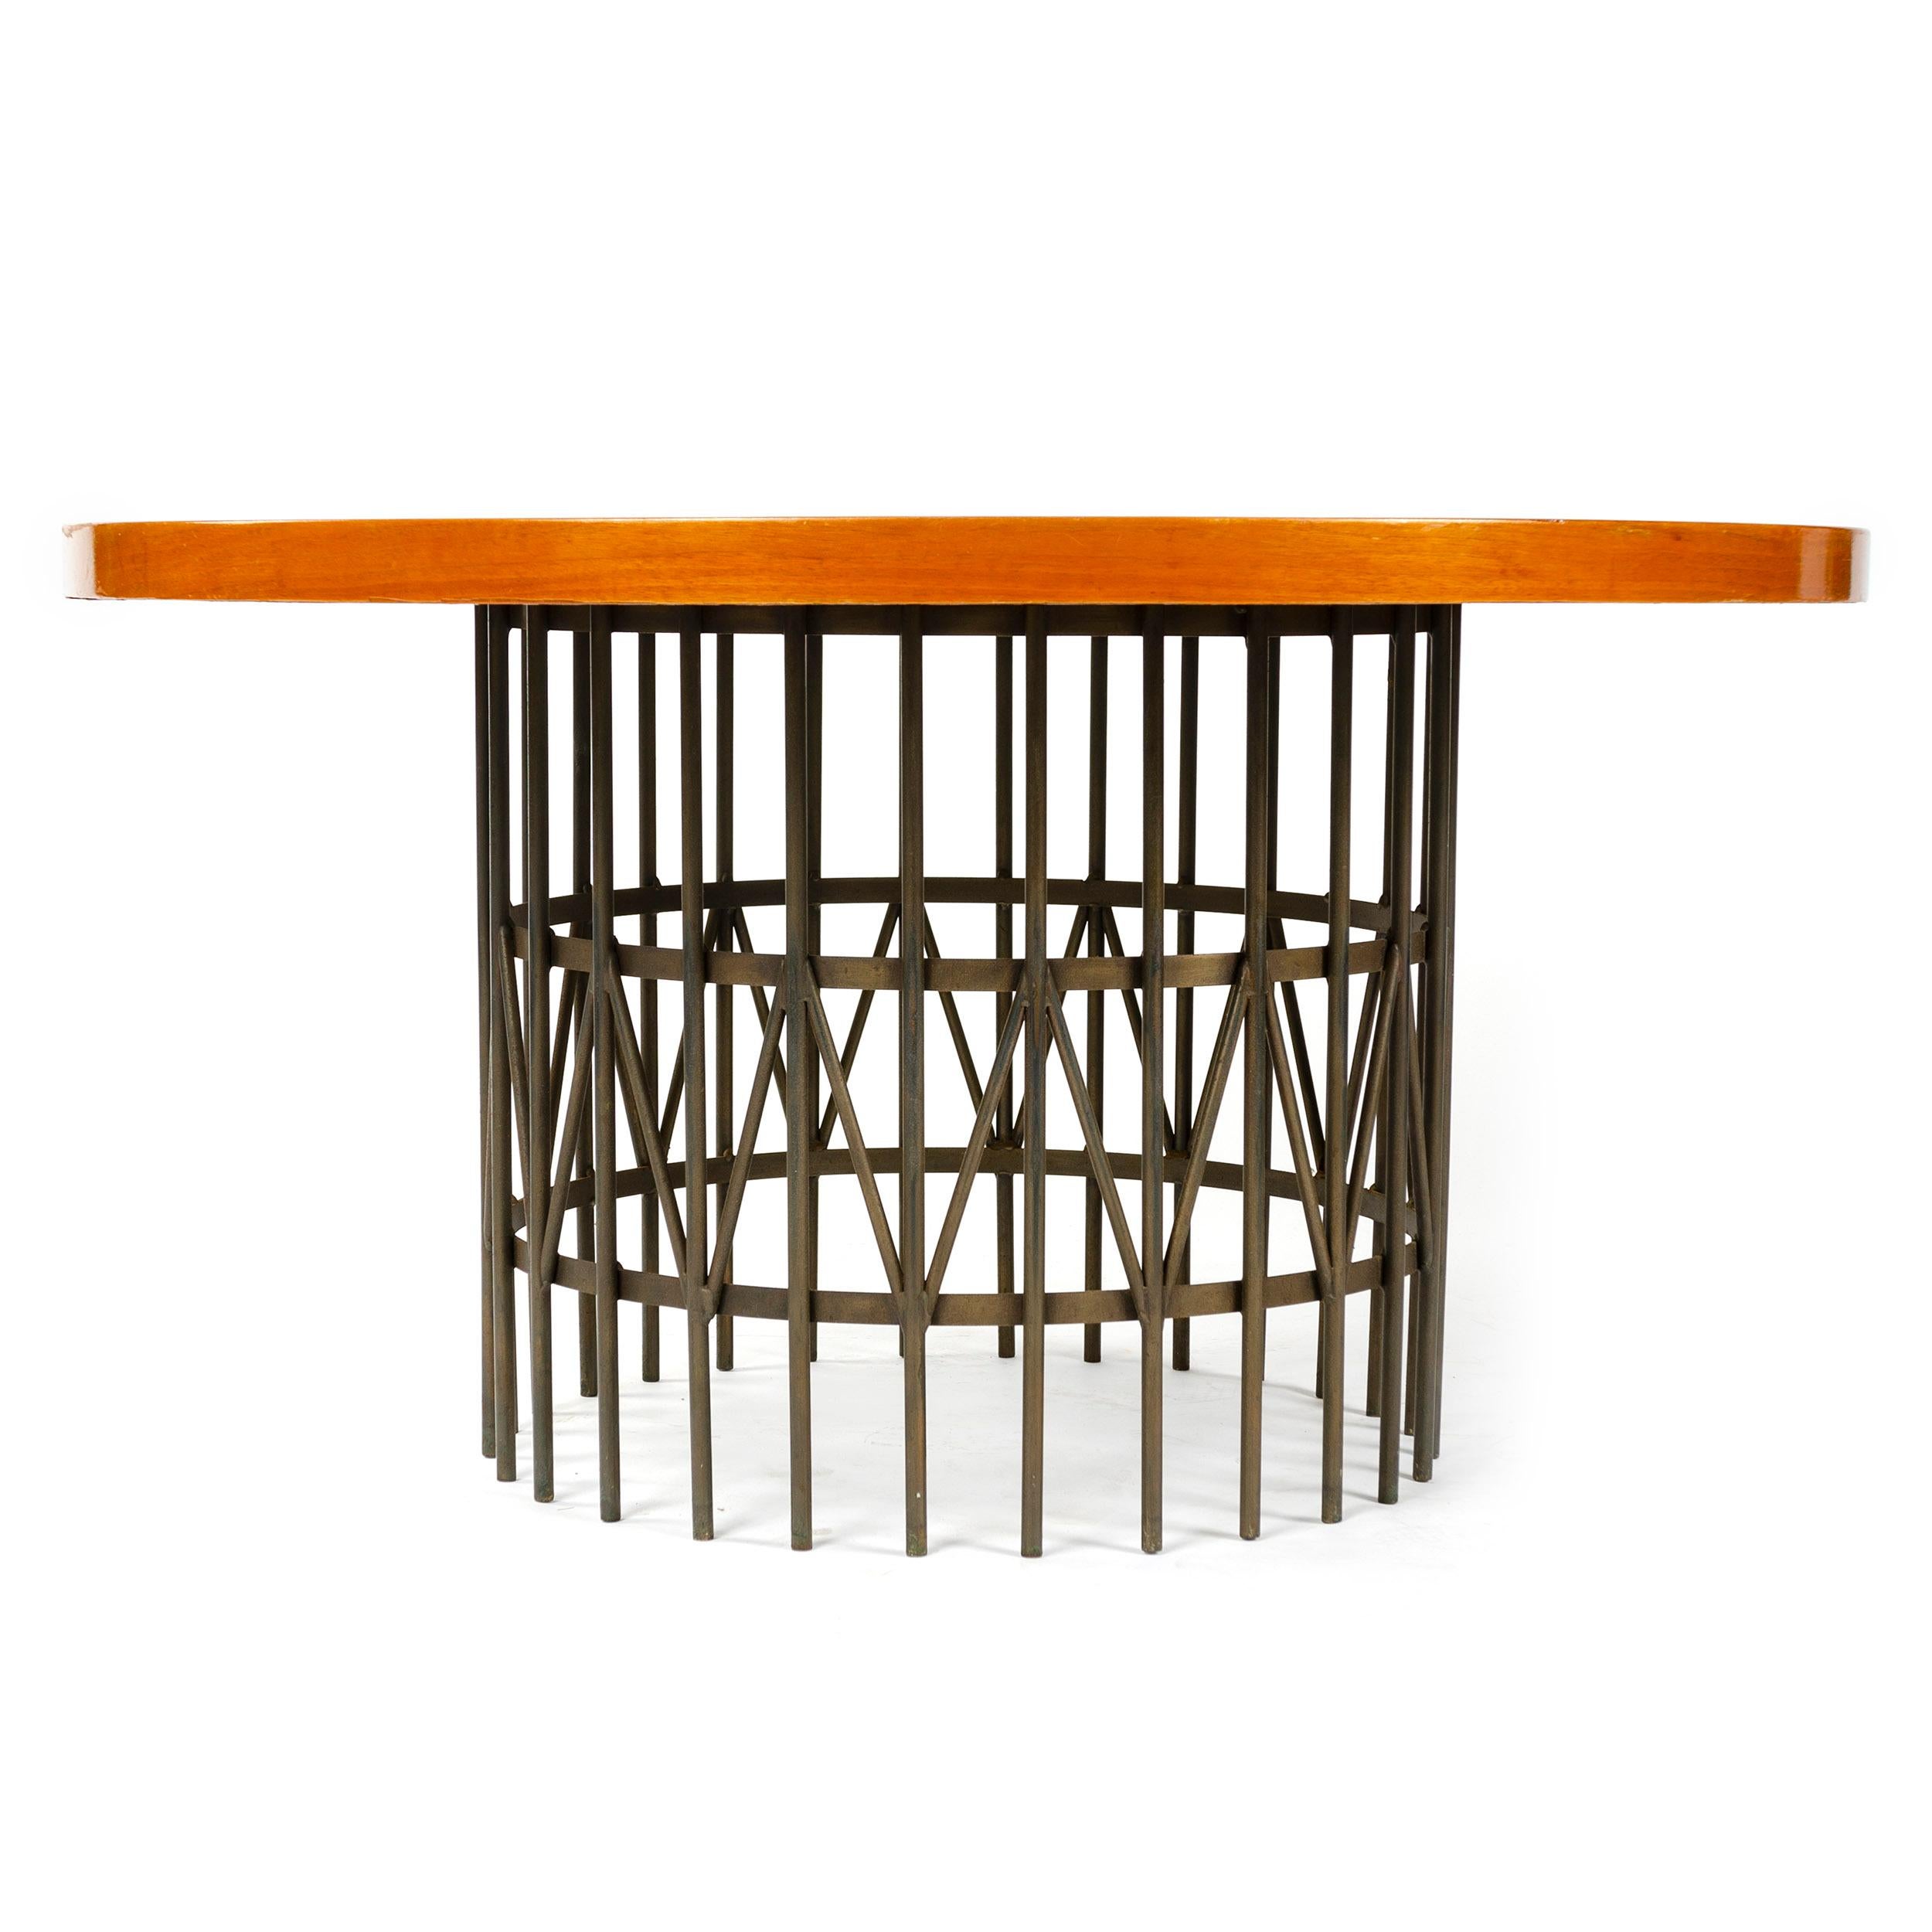 Ein von Milo Baughman entworfener, runder, niedriger Tisch/Cocktailtisch aus der Mitte des Jahrhunderts mit Massivholzfurnier und bronziertem Stahlrundstabgestell. Hergestellt von Thayer-Coggin in den USA in den 1960er Jahren.